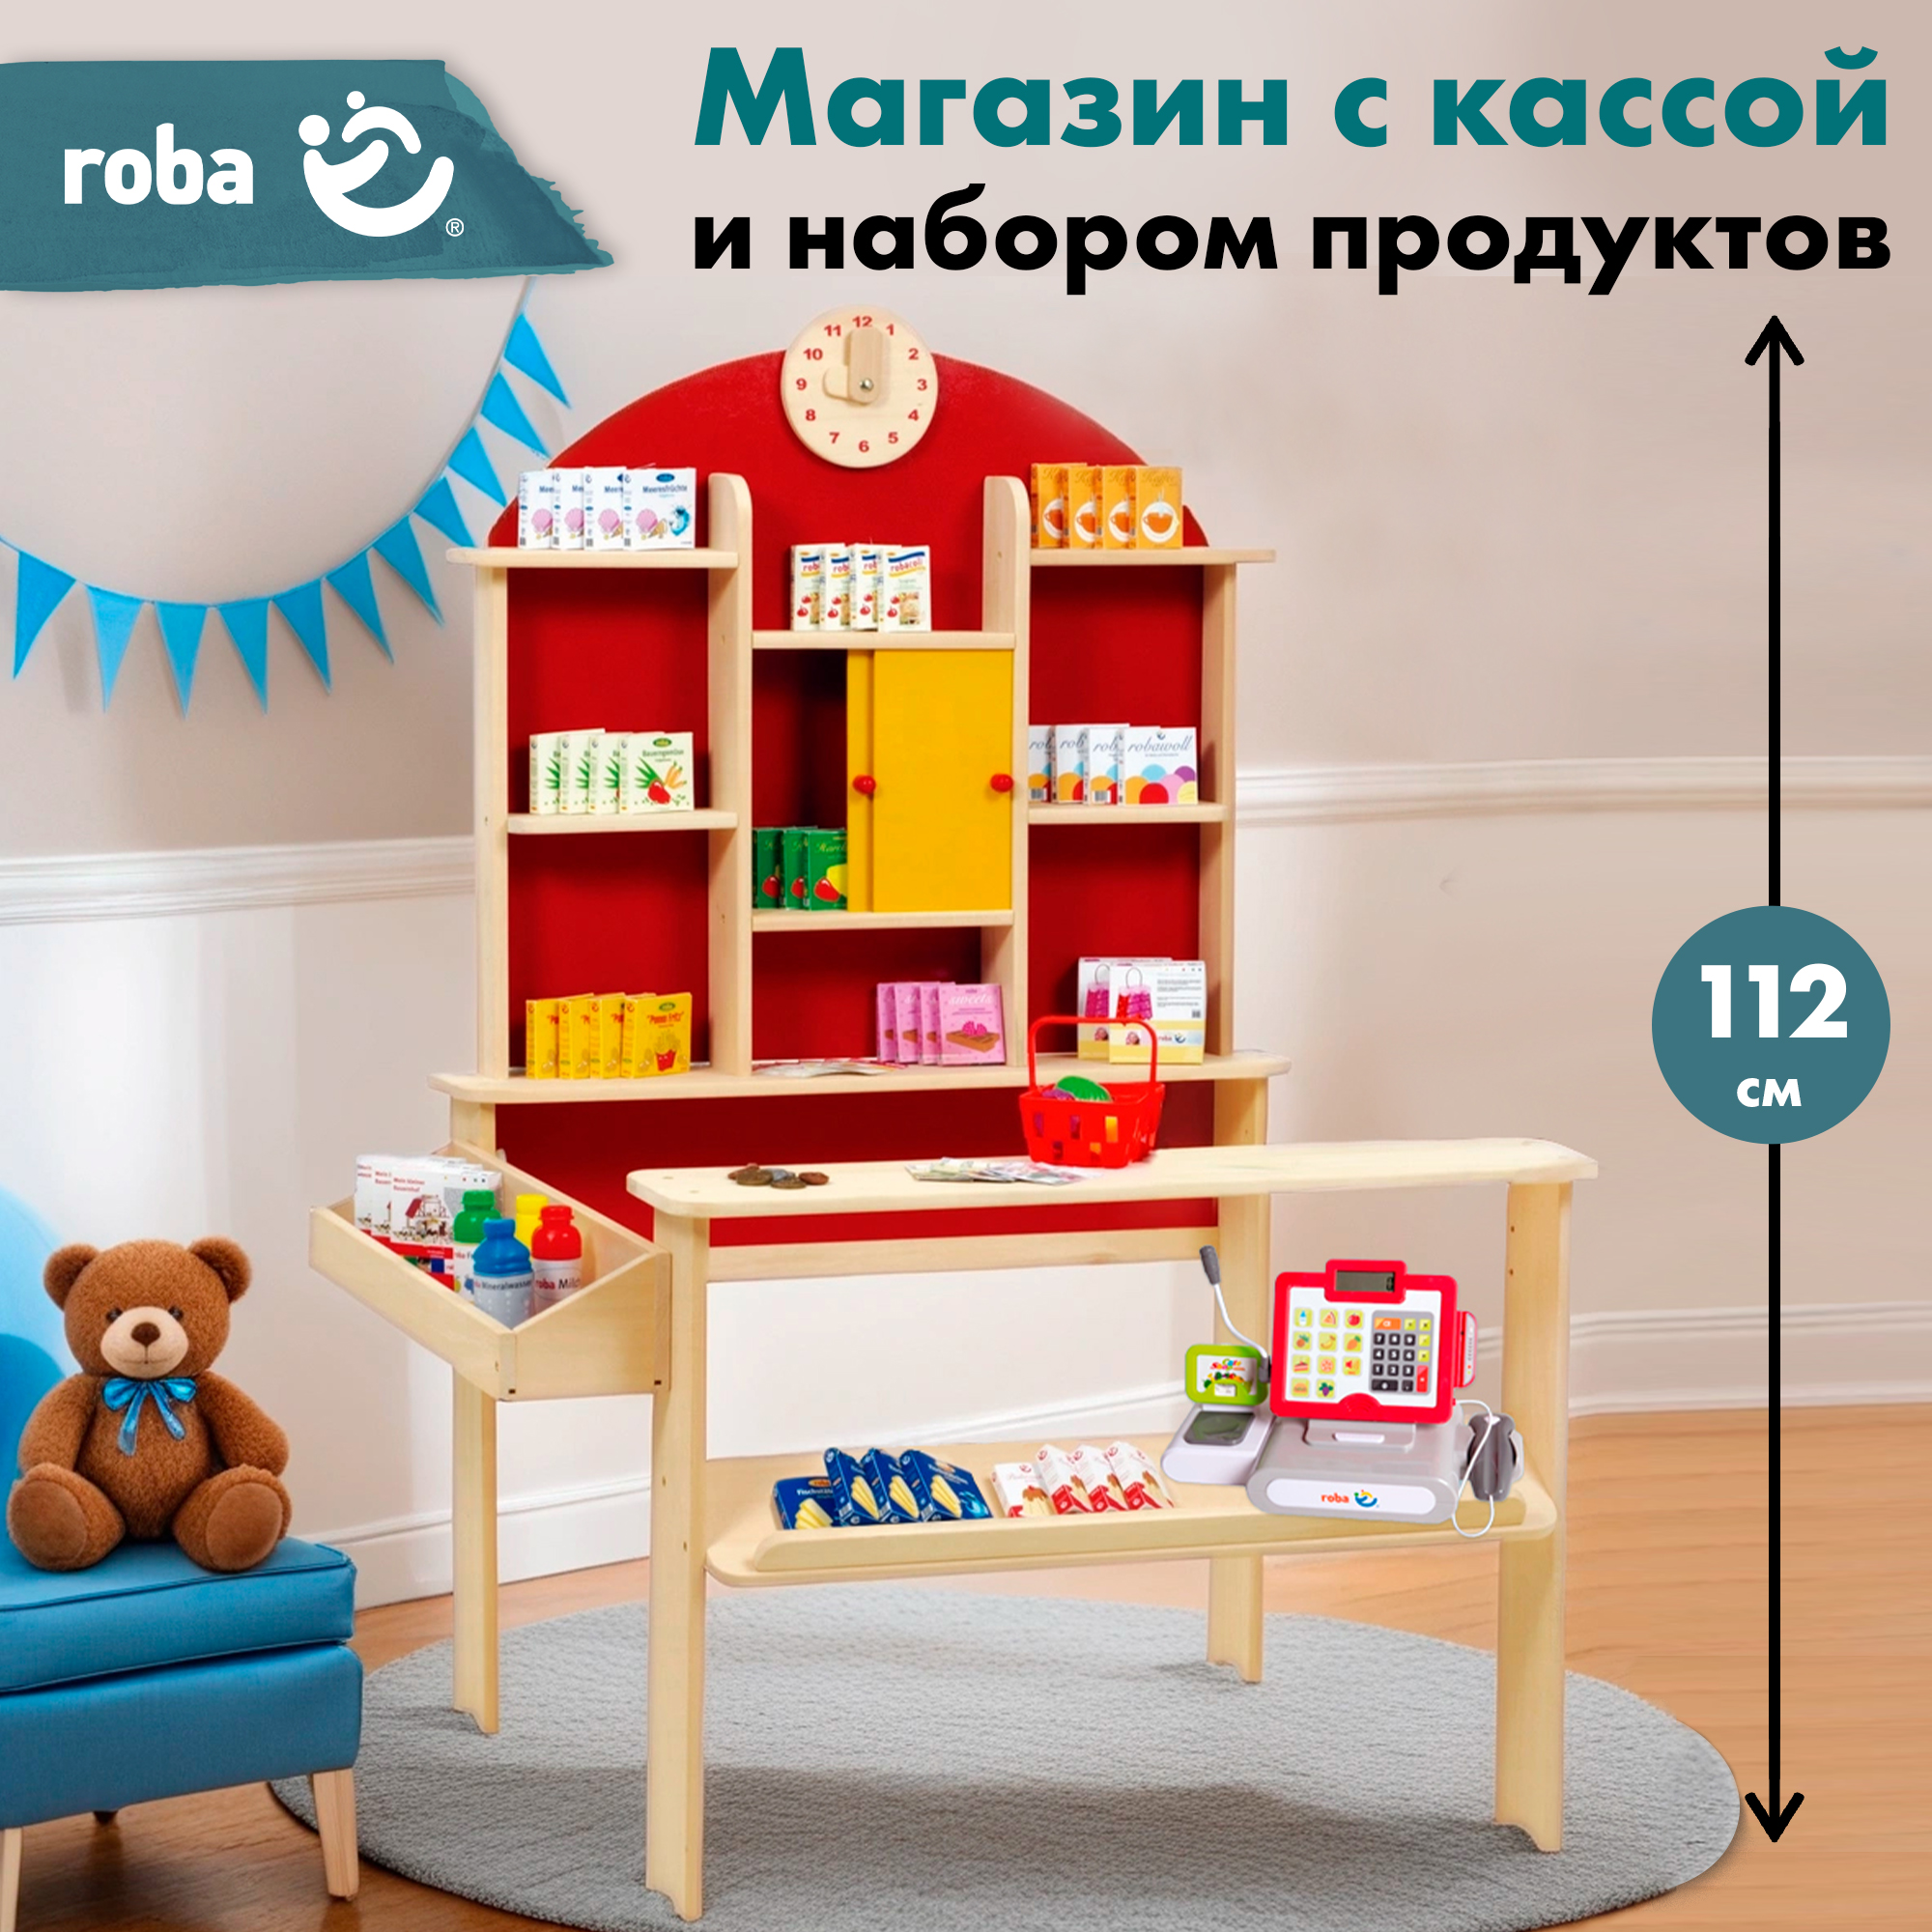 Детский магазин Roba игровой набор: супермаркет с игрушечными продуктами и кассой nd play набор большой магазин xxl с тележкой для покупок